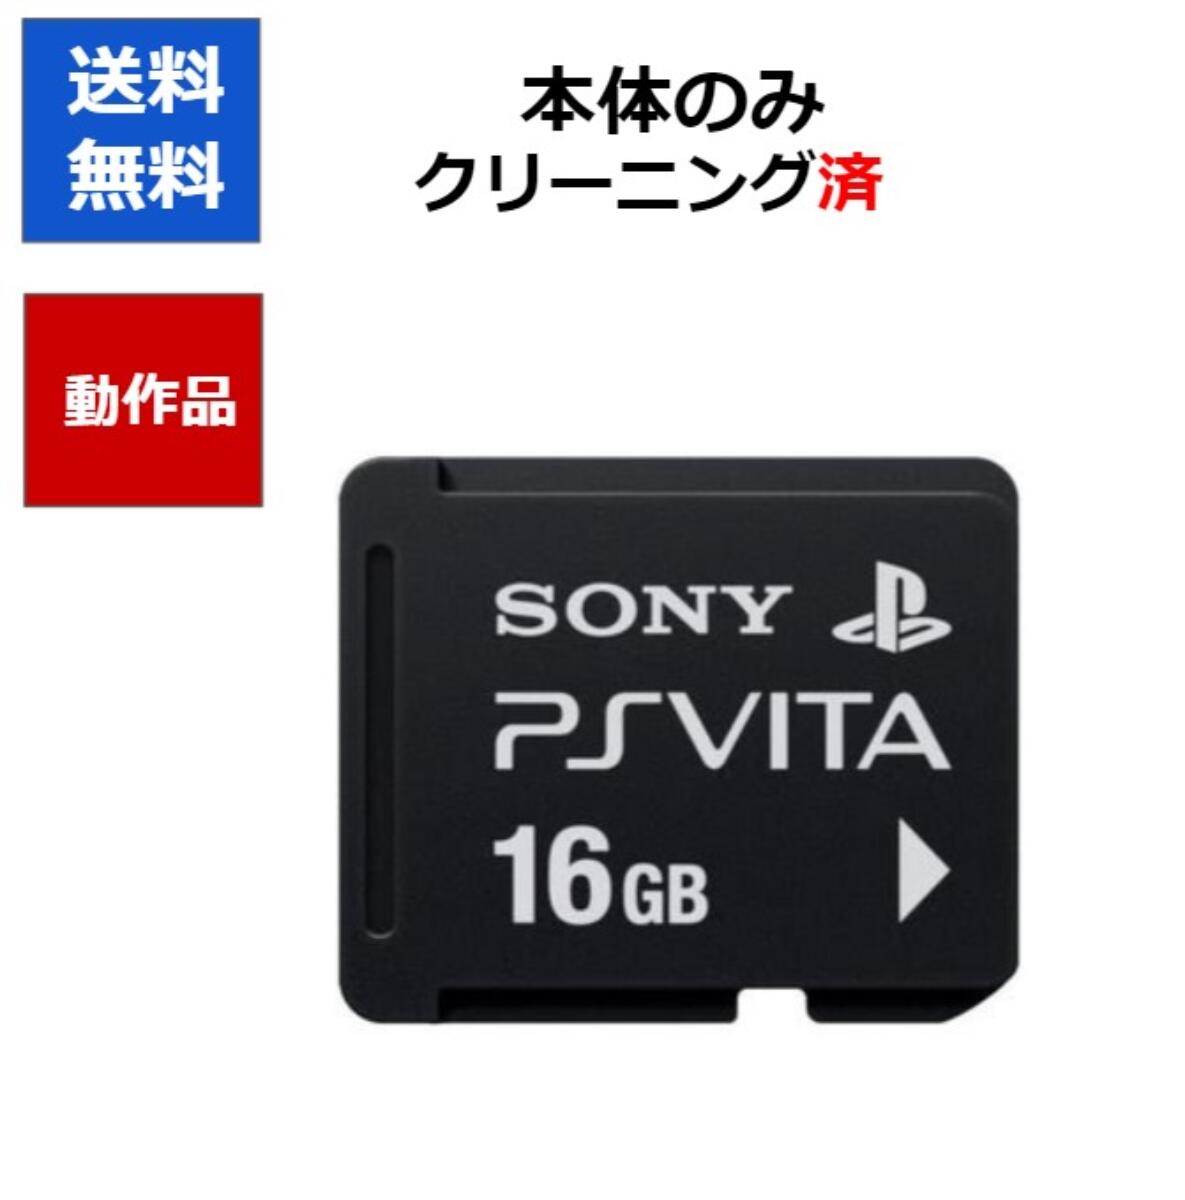 送料無料 PlayStation 実物 Vita 16GB 中古 期間限定お試し価格 メモリーカード